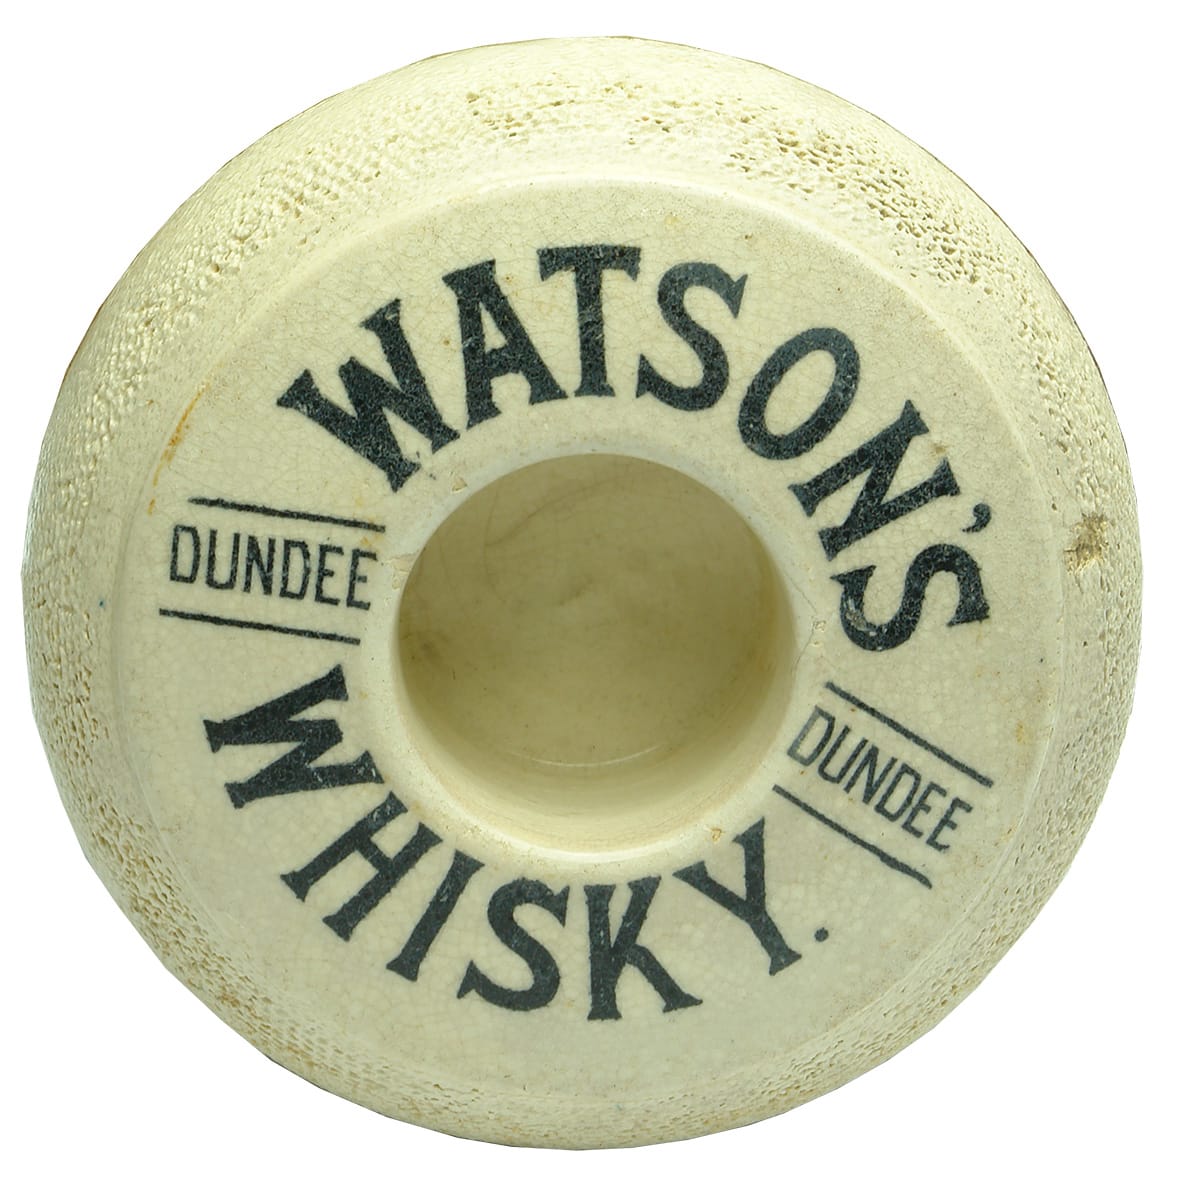 Watsons Whisky Match Striker